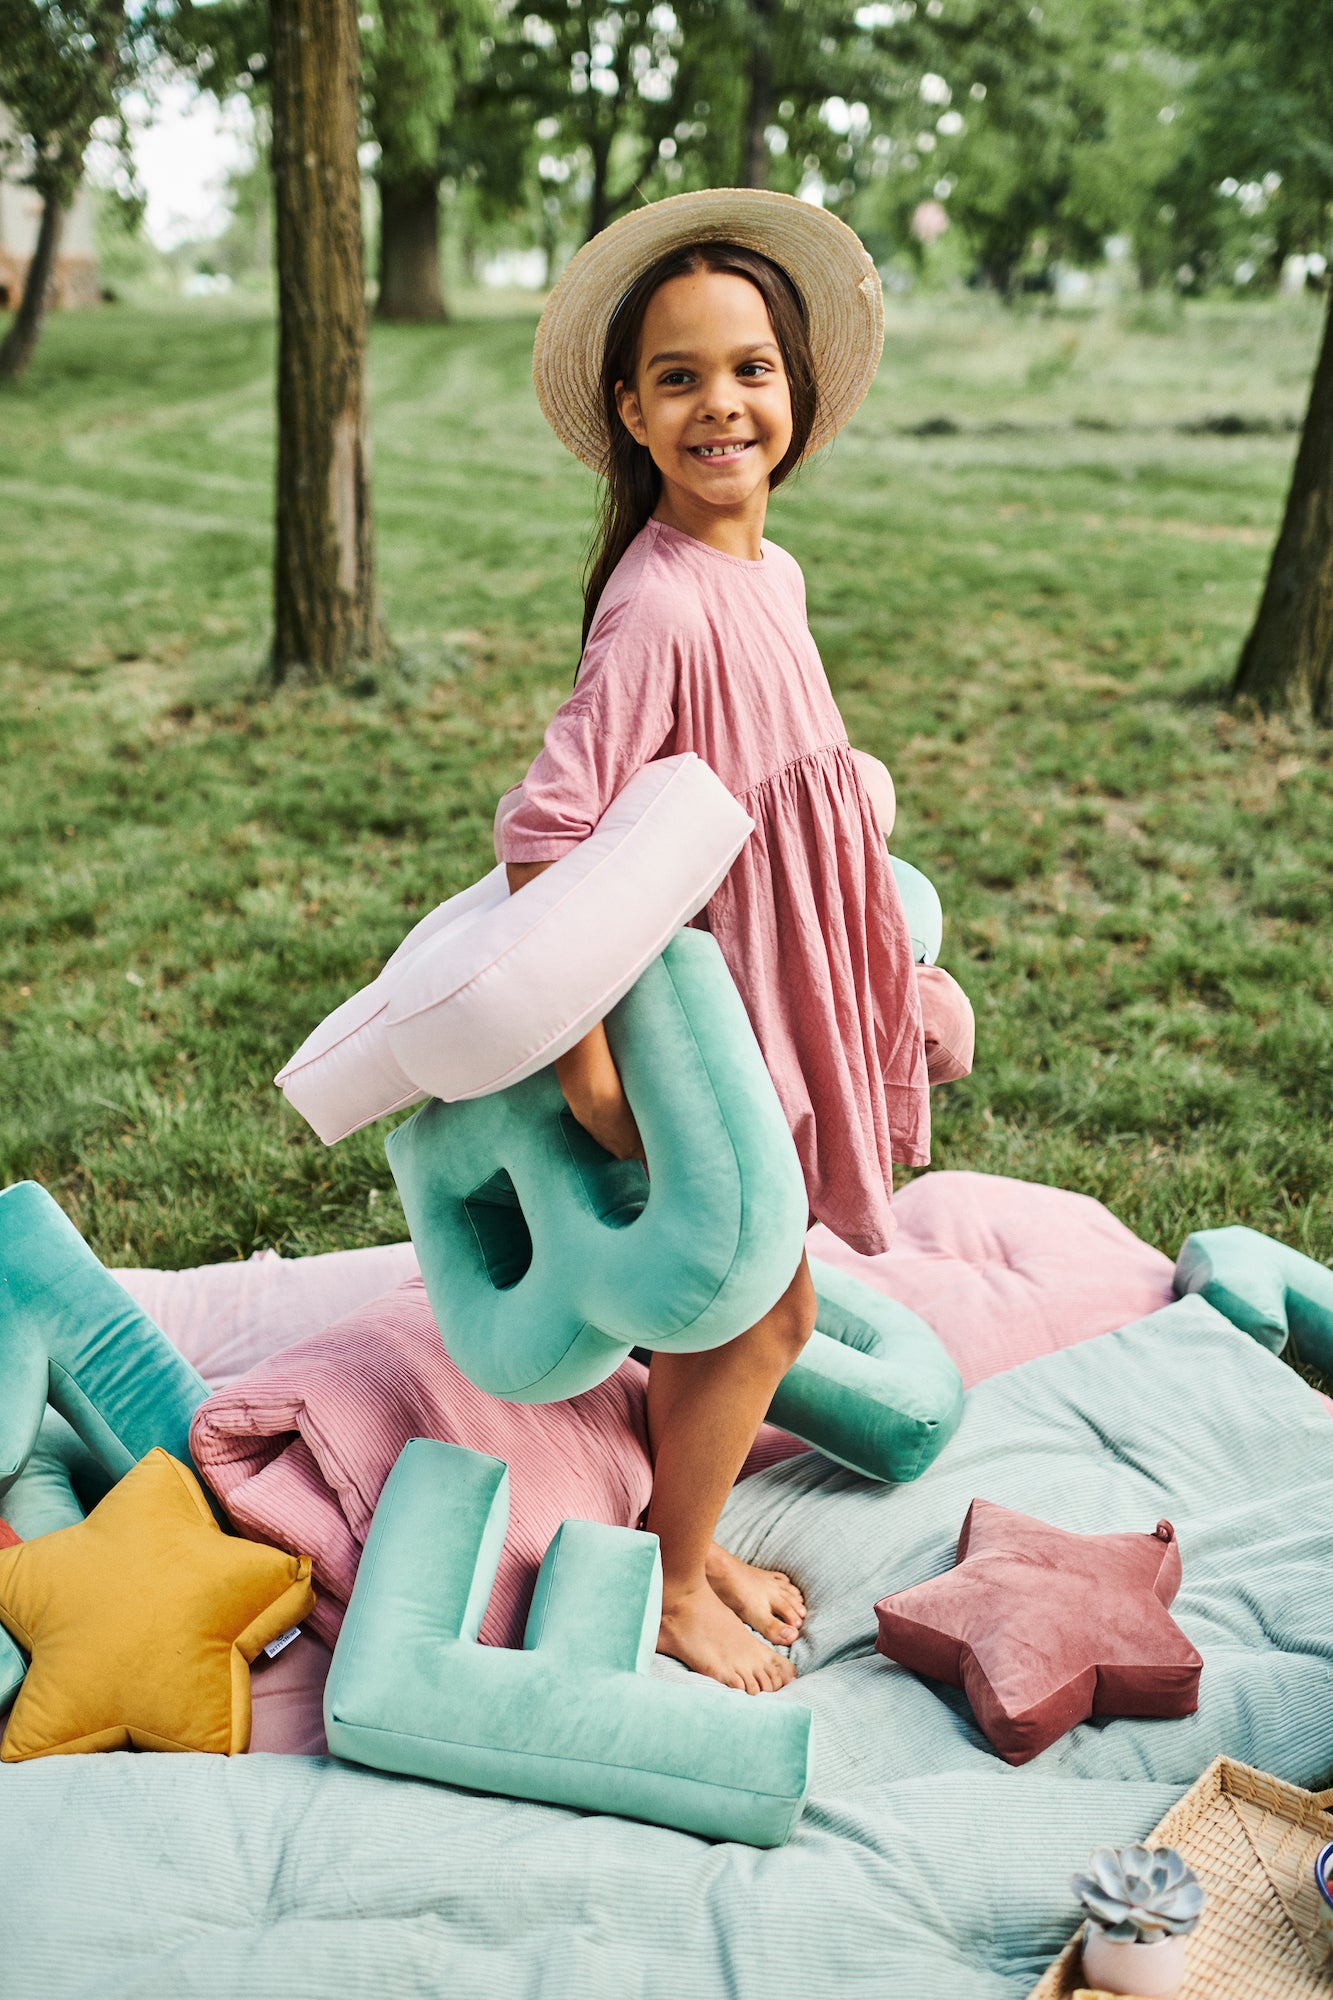 dziewczynka w różowej sukience w parku na trawie trzyma poduszki literki welurowe od Bettys Home